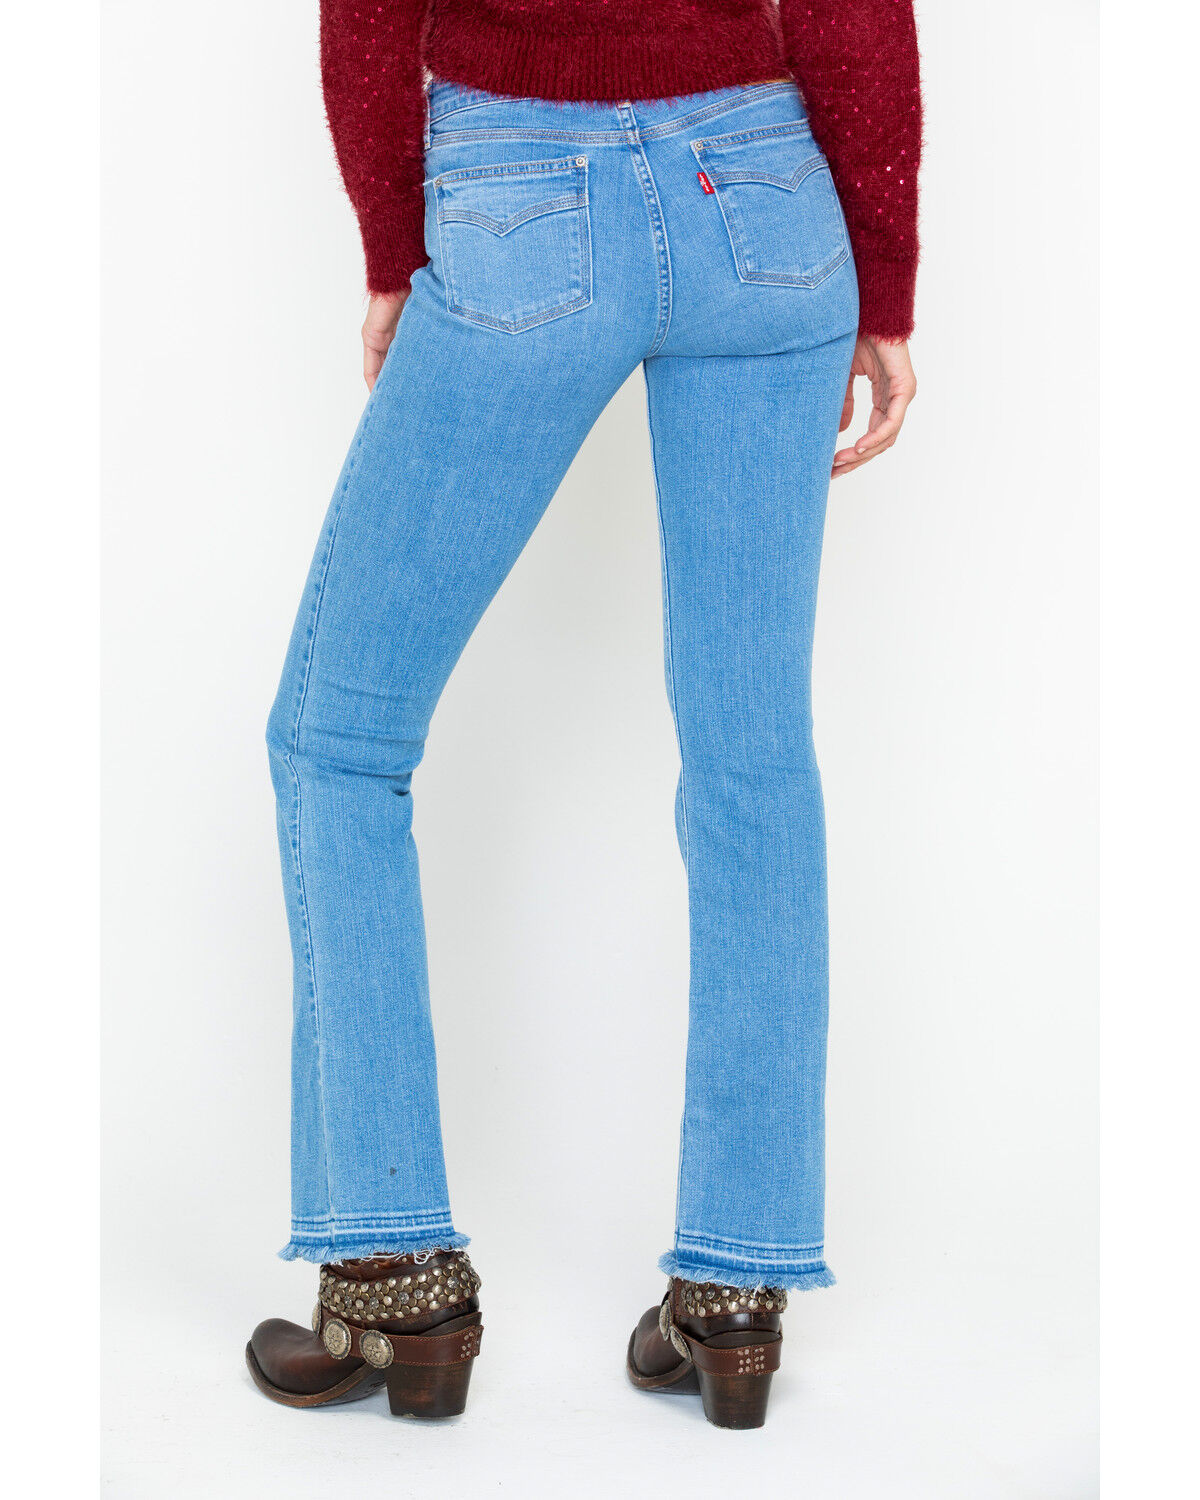 levi's women's 715 vintage bootcut jeans